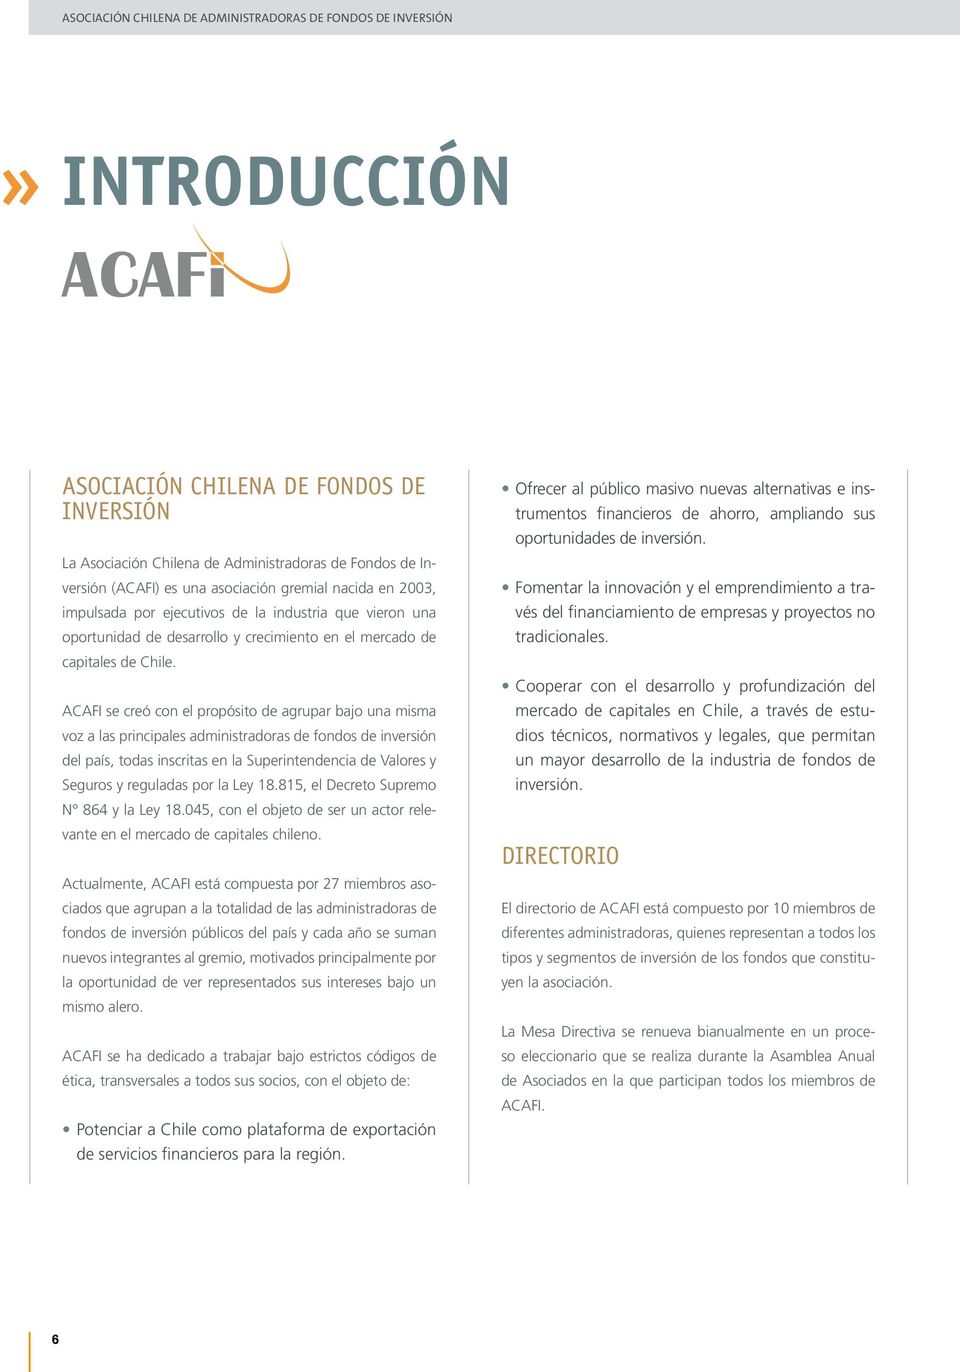 ACAFI se creó con el propósito de agrupar bajo una misma voz a las principales administradoras de fondos de inversión del país, todas inscritas en la Superintendencia de Valores y Seguros y reguladas